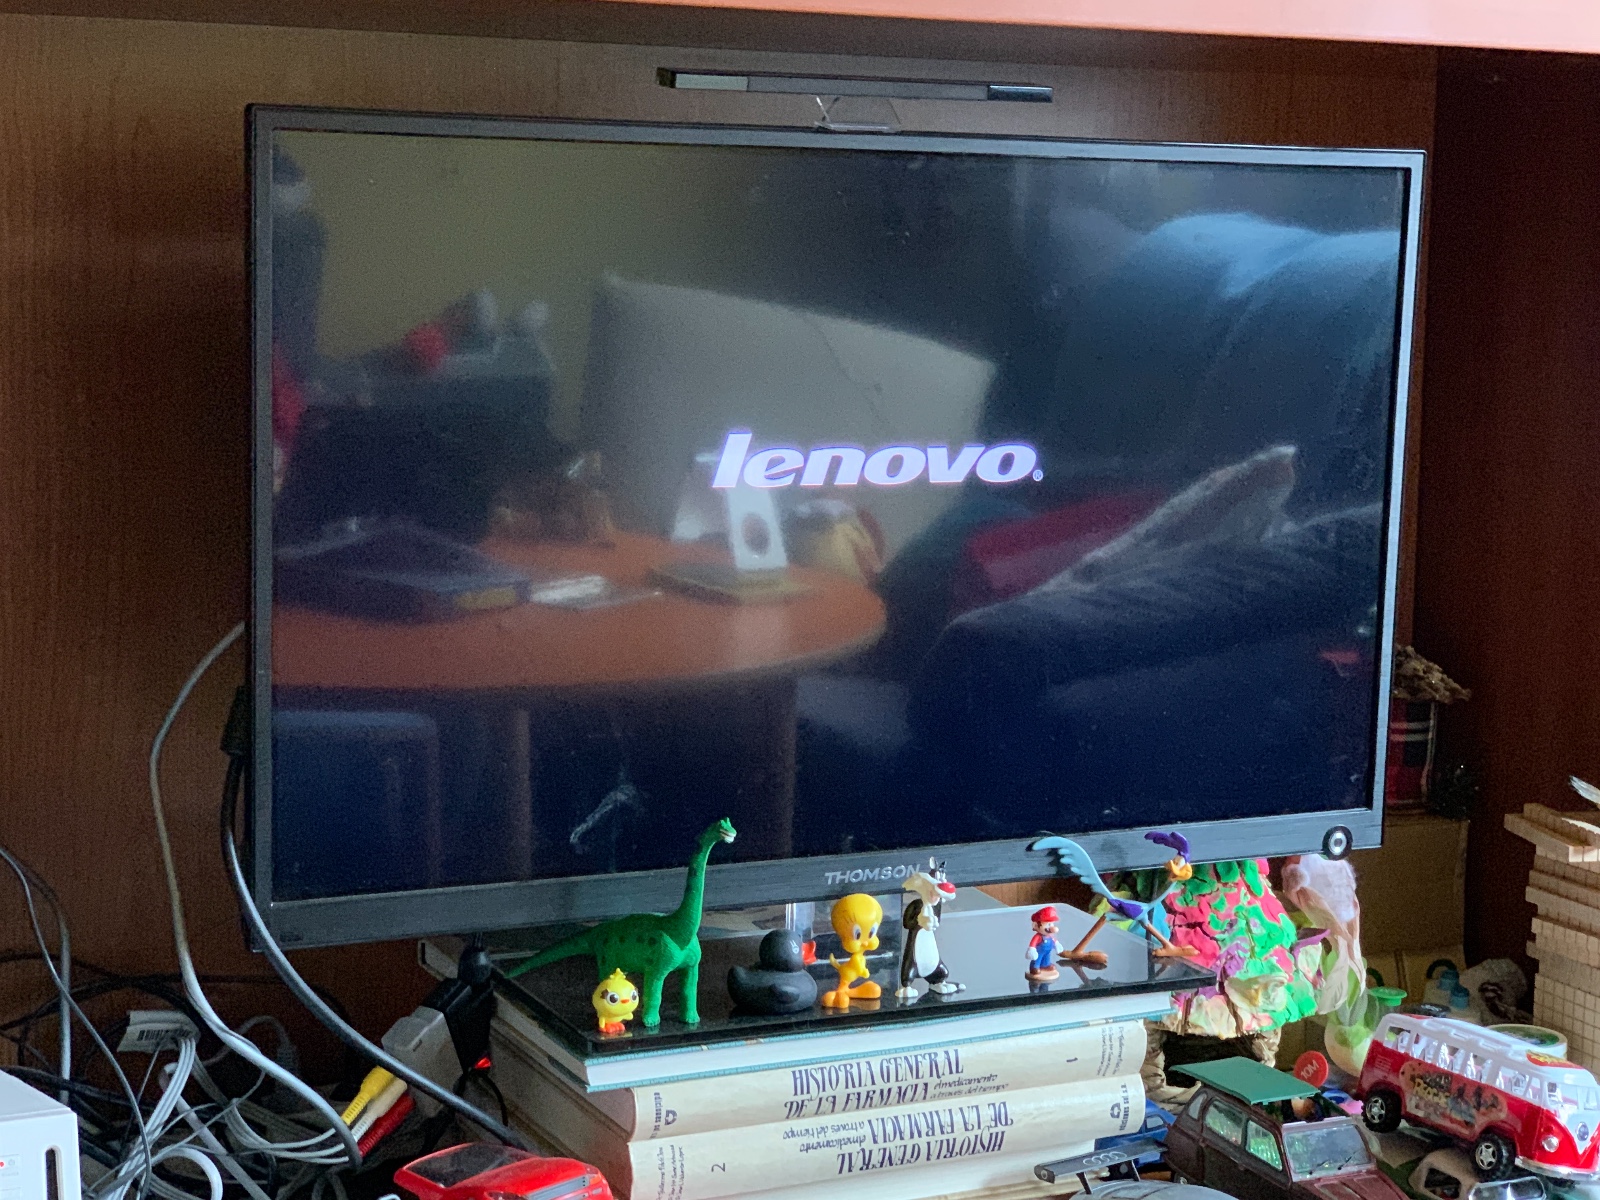 Equipo-bloqueado-tras-actualizacion - Comunidad de Lenovo - LENOVO COMUNIDAD